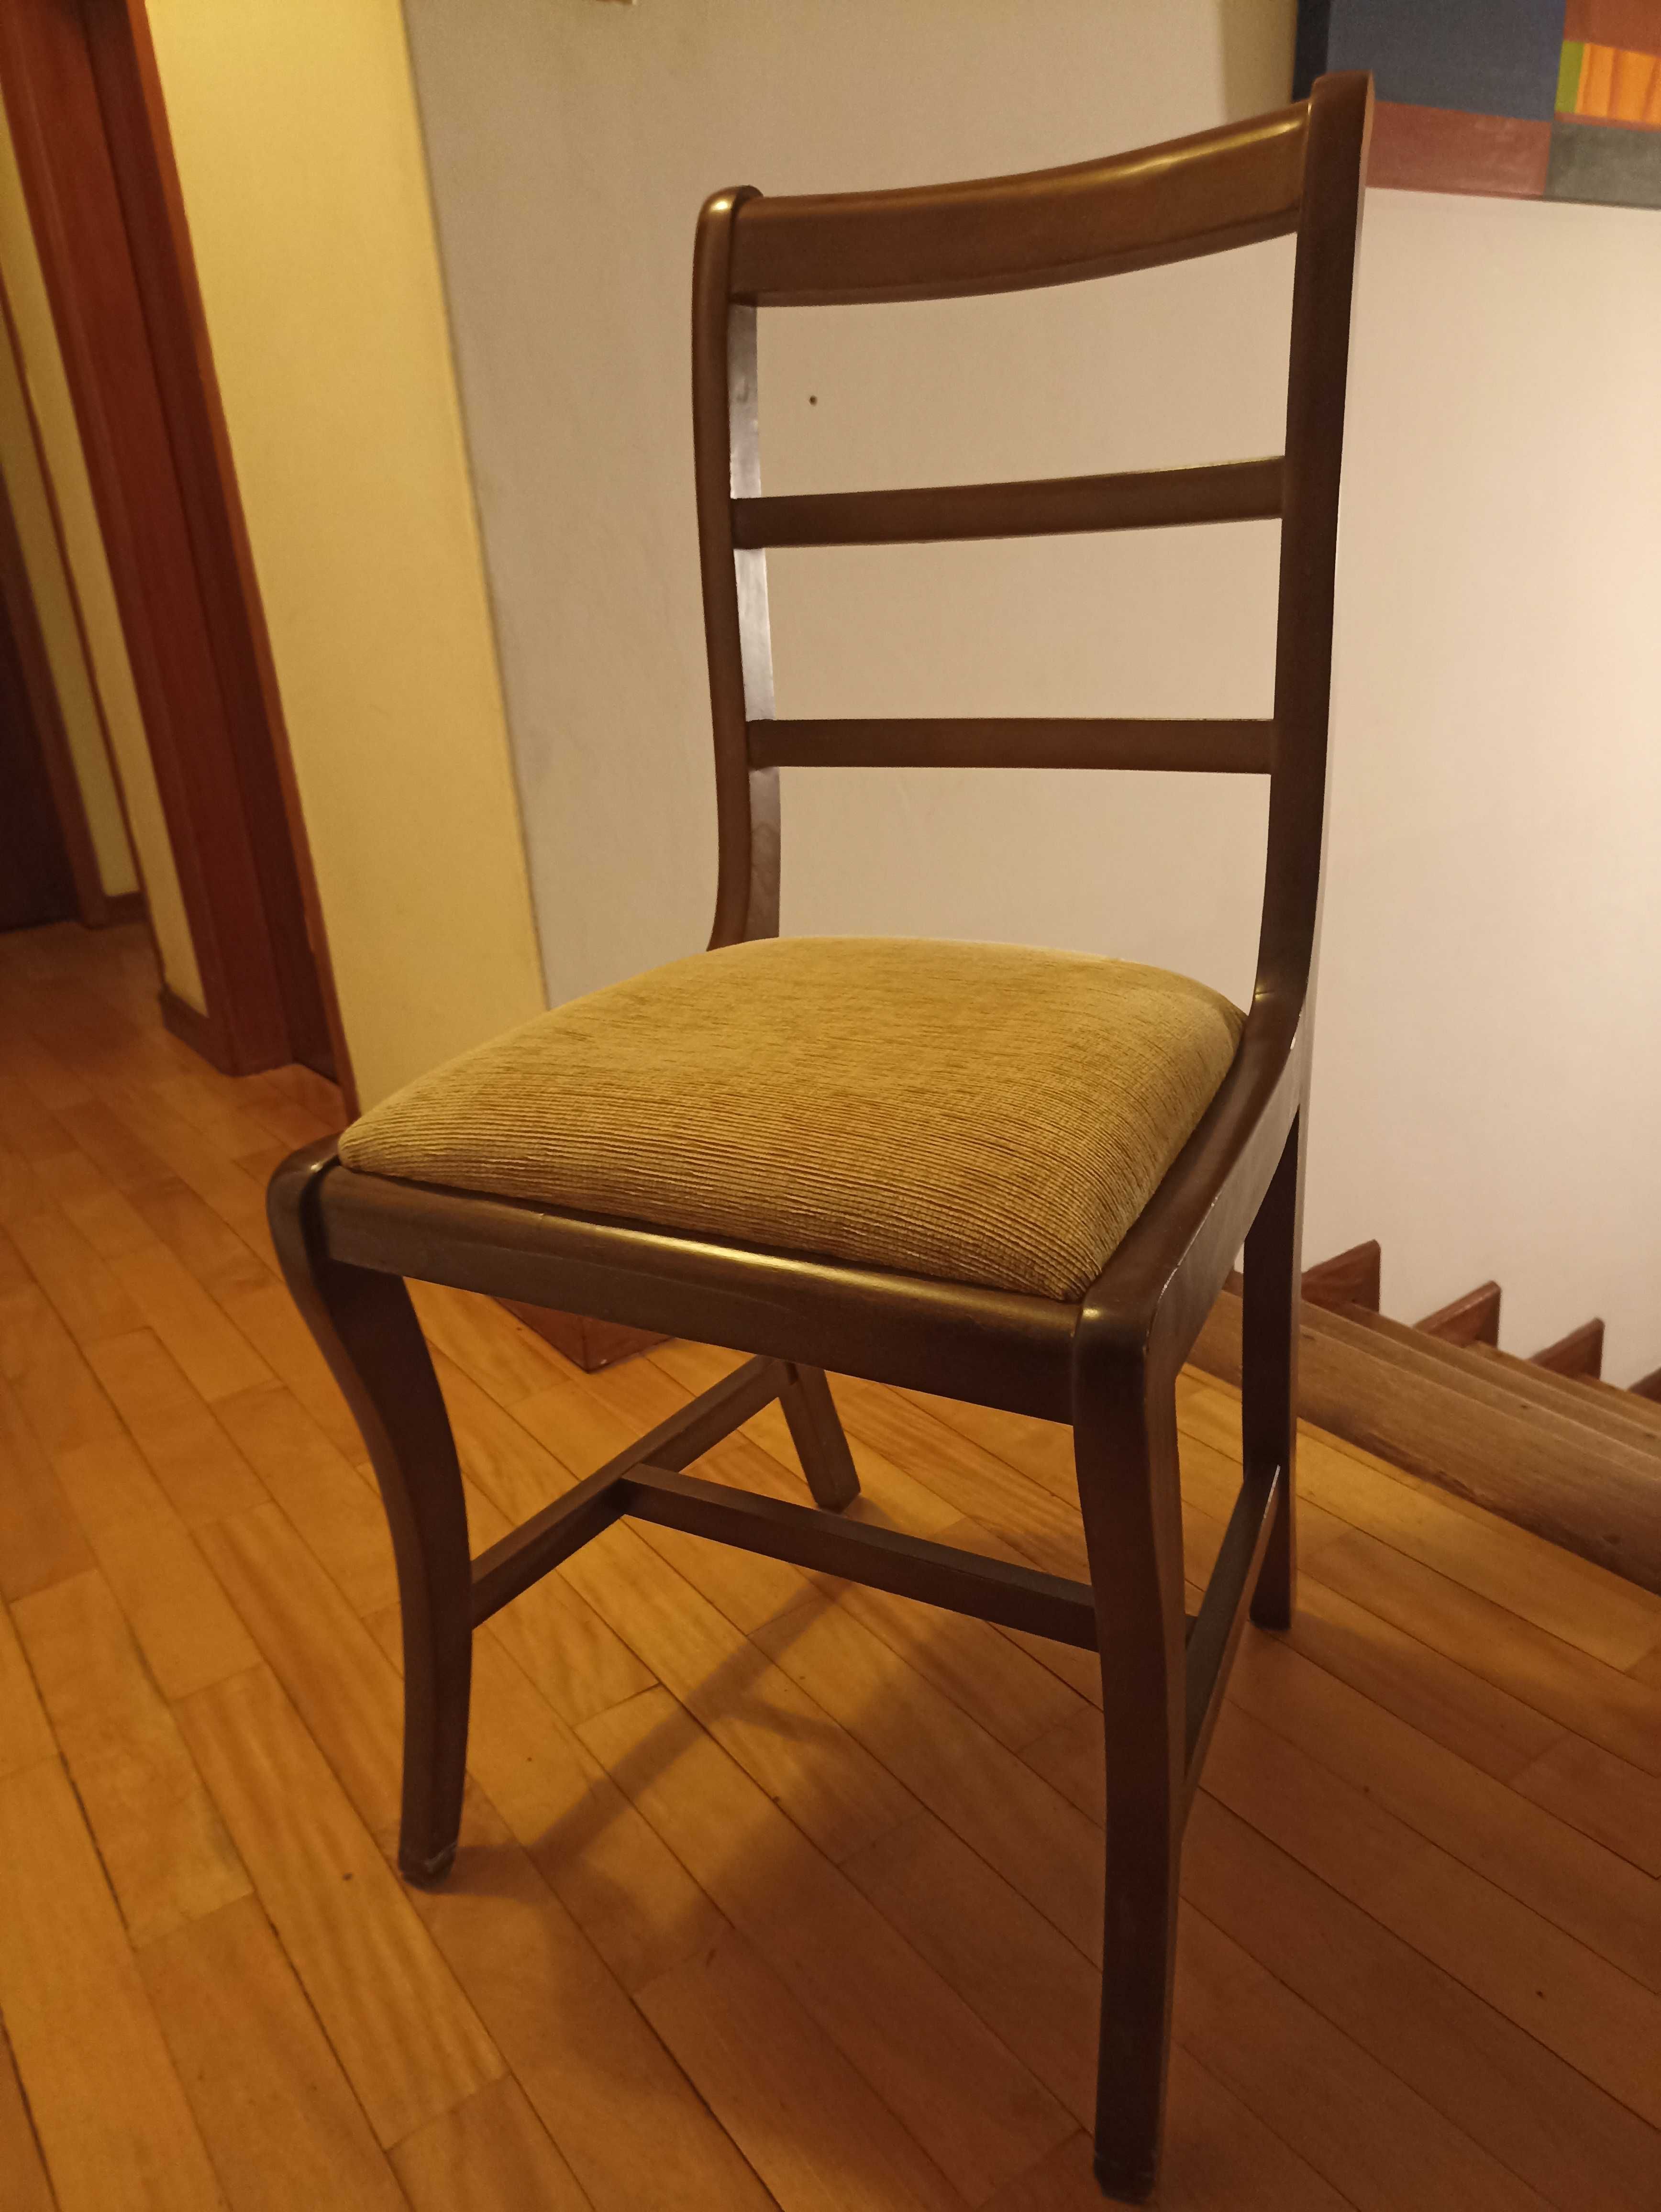 Cadeiras usadas em bom estado- OPORTUNIDADE - 25€ cada